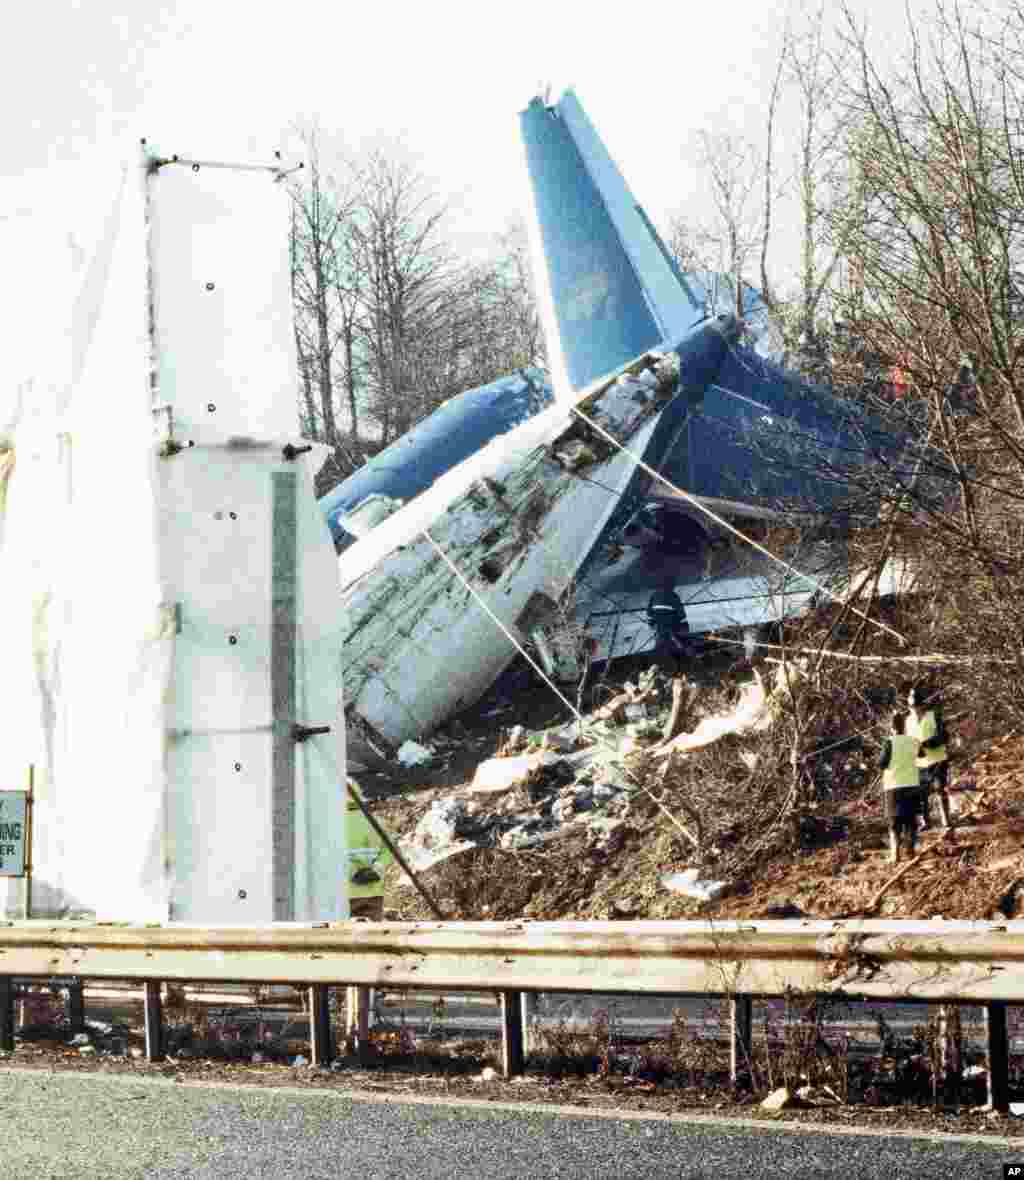 امروز در تاریخ: سال ۱۹۸۹ &ndash; سقوط هواپیما مسافربری Boeing 737-400 در نزدیکی&zwnj; شهر دونینگتون انگلیس. در این حادثه، ۴۴ نفر جان خود را از دست دادند و بیش از ۷۰ نفر دیگر مجروح شدند.